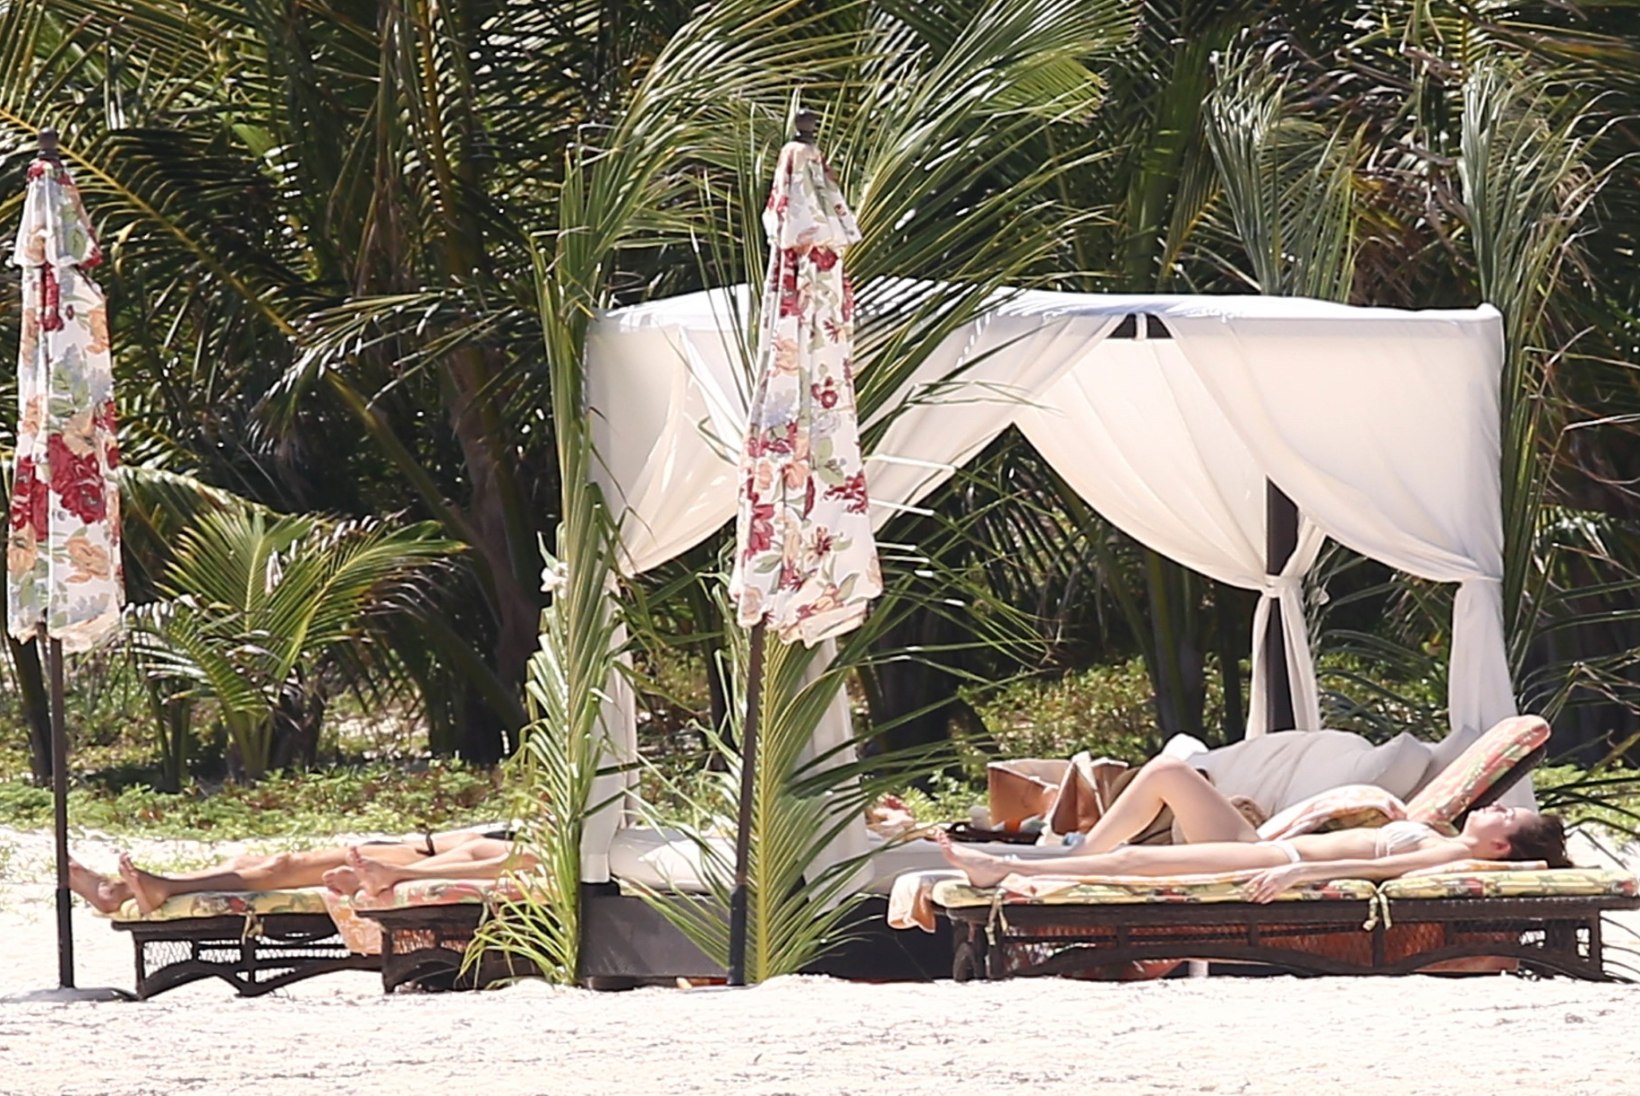 FOTOD: Dakota Johnson päevitas koos Melanie Griffithi ning Kris Jenneriga Cancunis